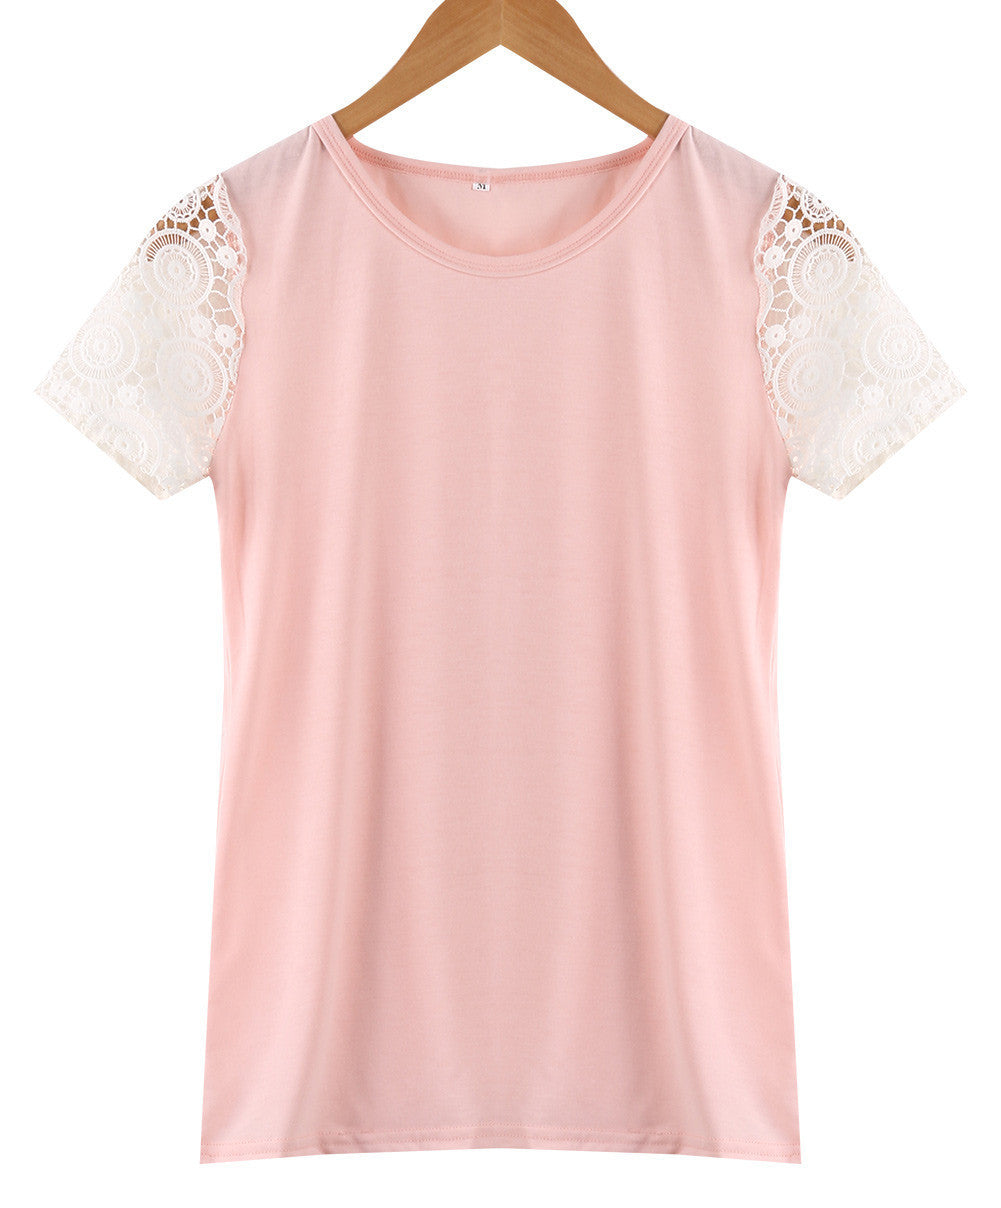 Online discount shop Australia - Candy Colors Pink Fashion Plus Size Women Vest Top Blouse Women's Lace Casual Tank Tops Ladies Lace Short Sleeve Blouse